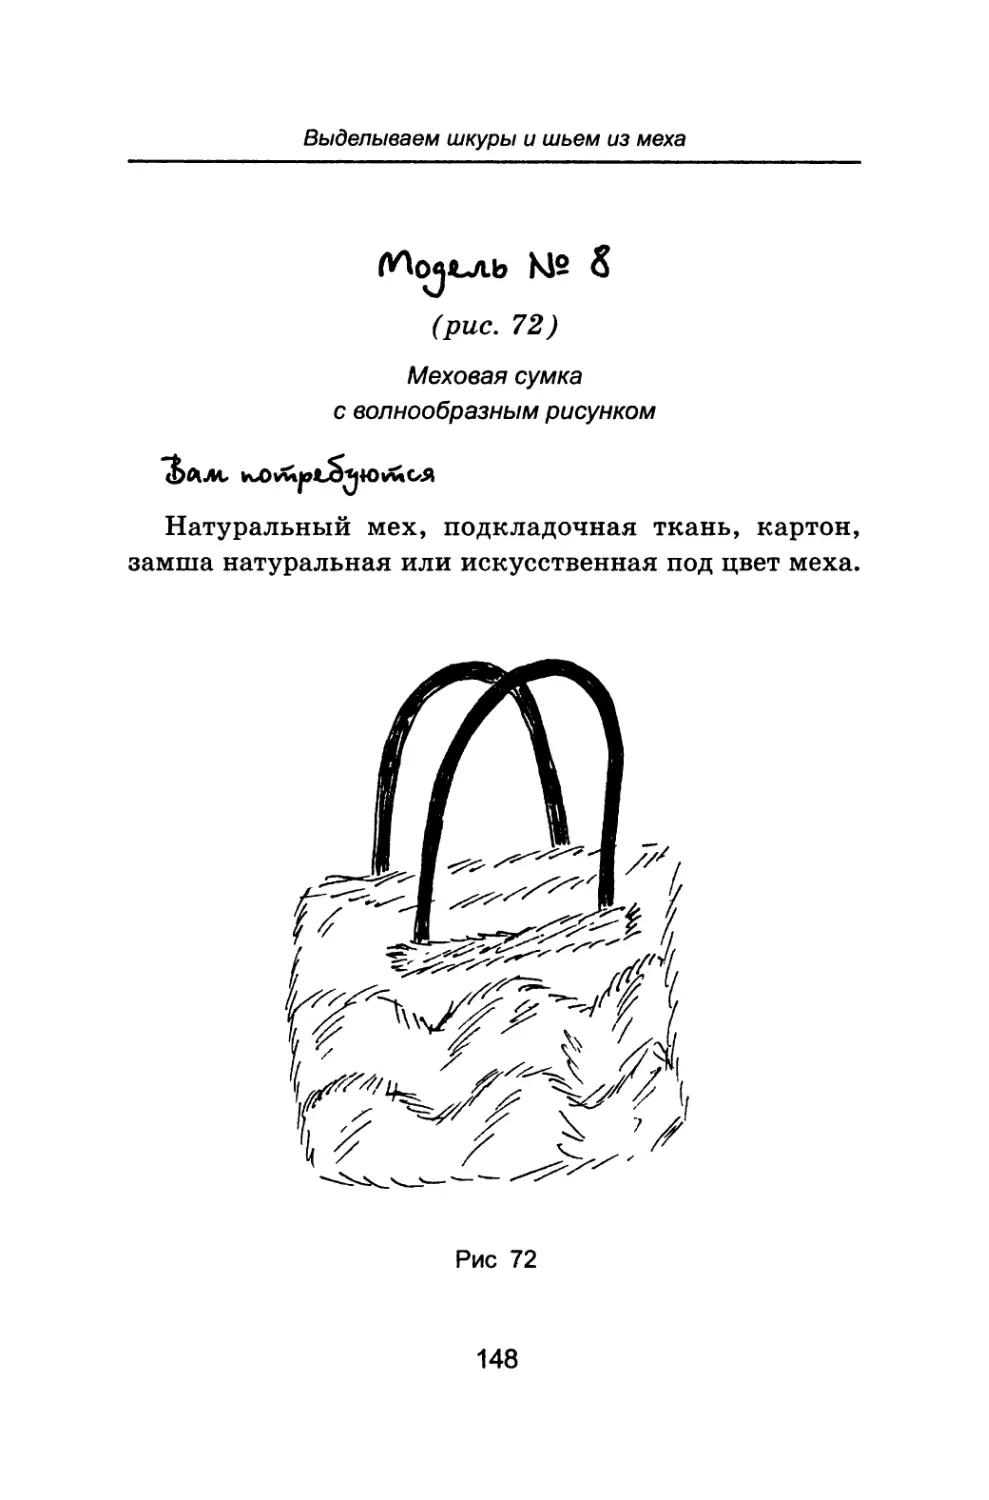 Модель № 8 Меховая сумка с волнообразным рисунком